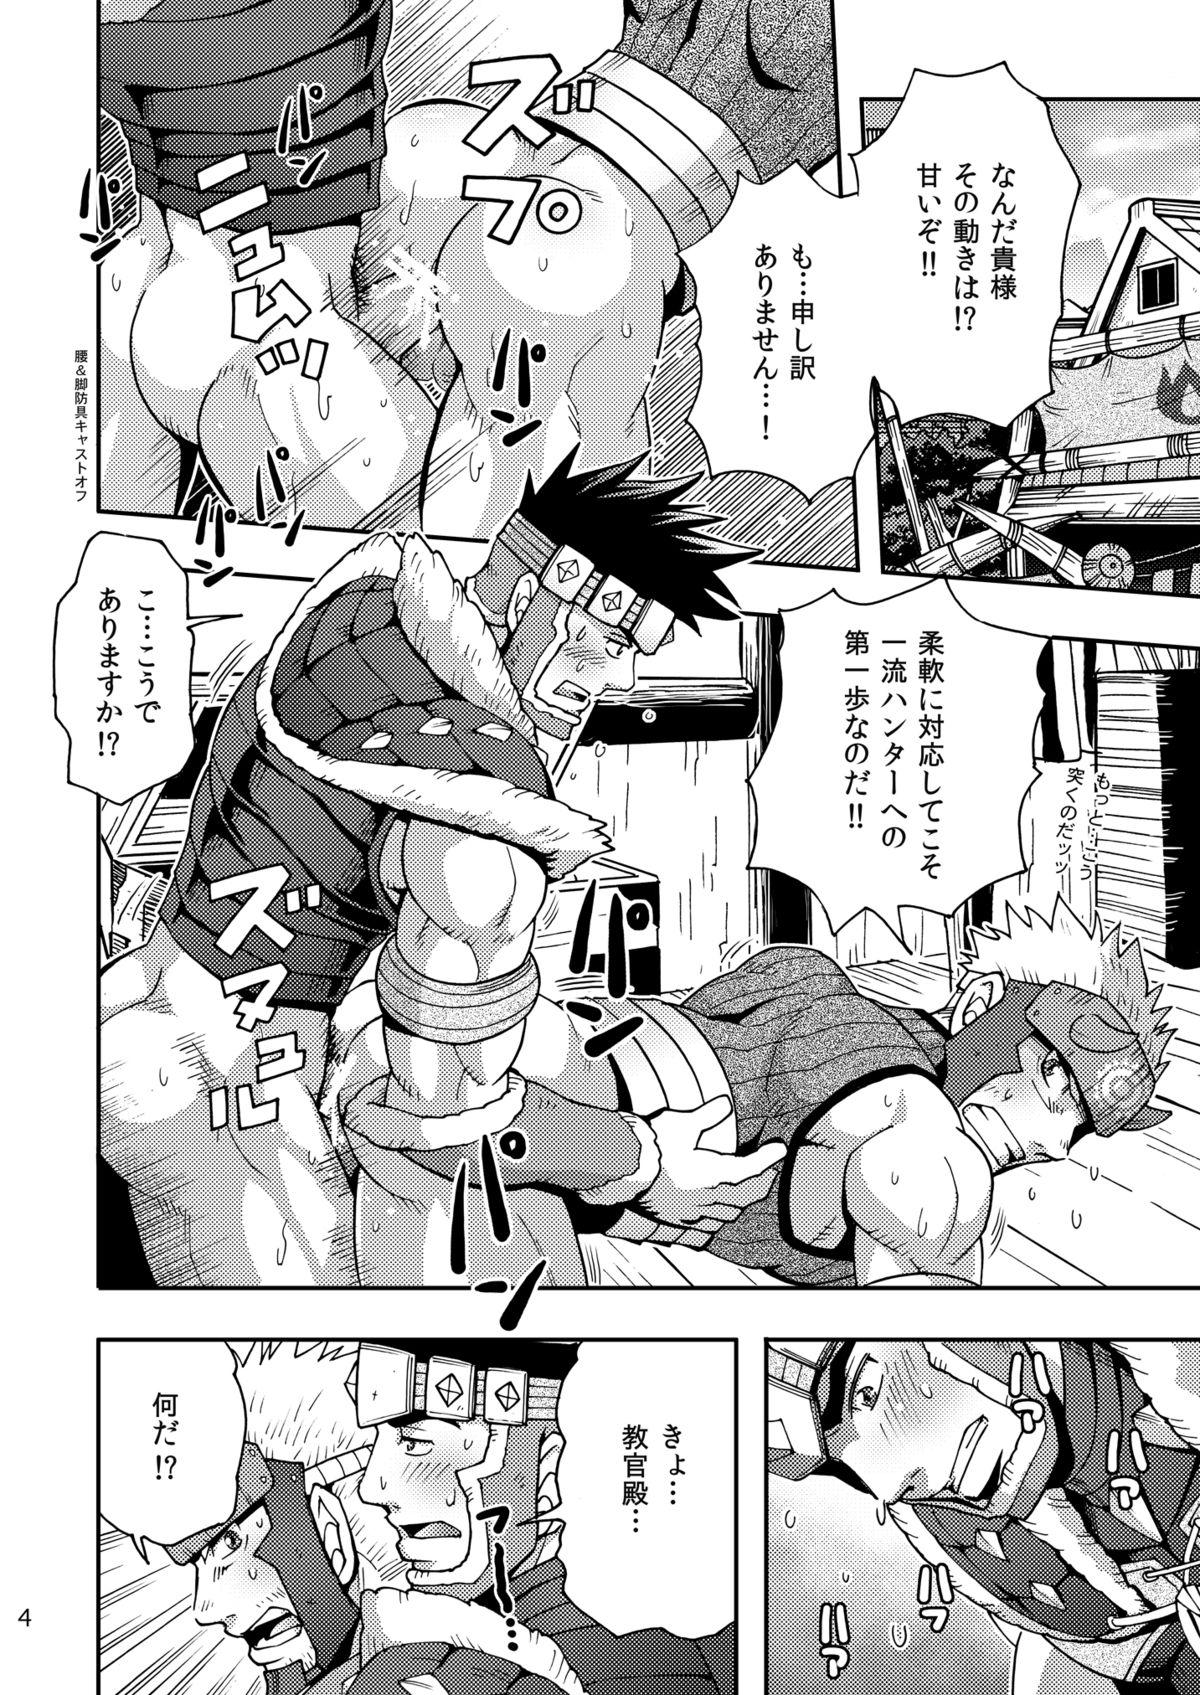 Sextoy Wagahai no Nitro Dake ga Bakuhatsushi Souna noda! - Monster hunter Free Fuck - Page 3